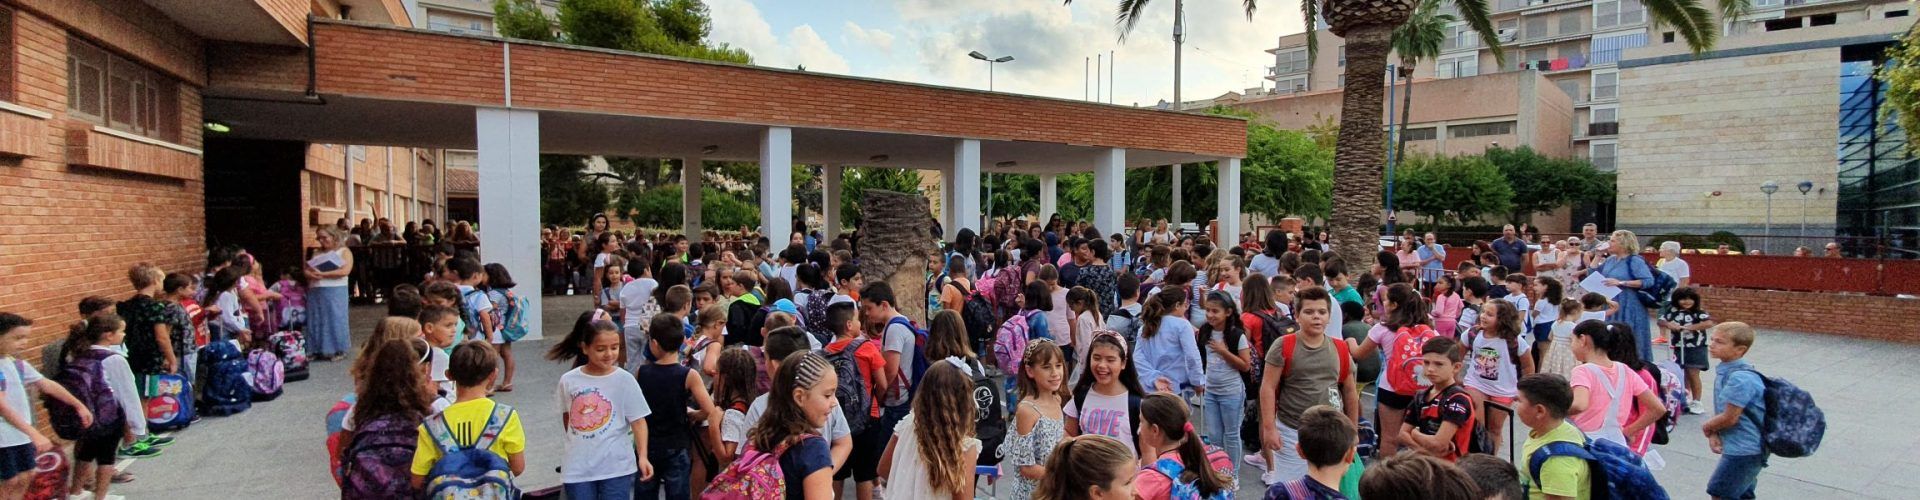 Arranca el curs 2019-20 a les escoles i instituts de Vinaròs